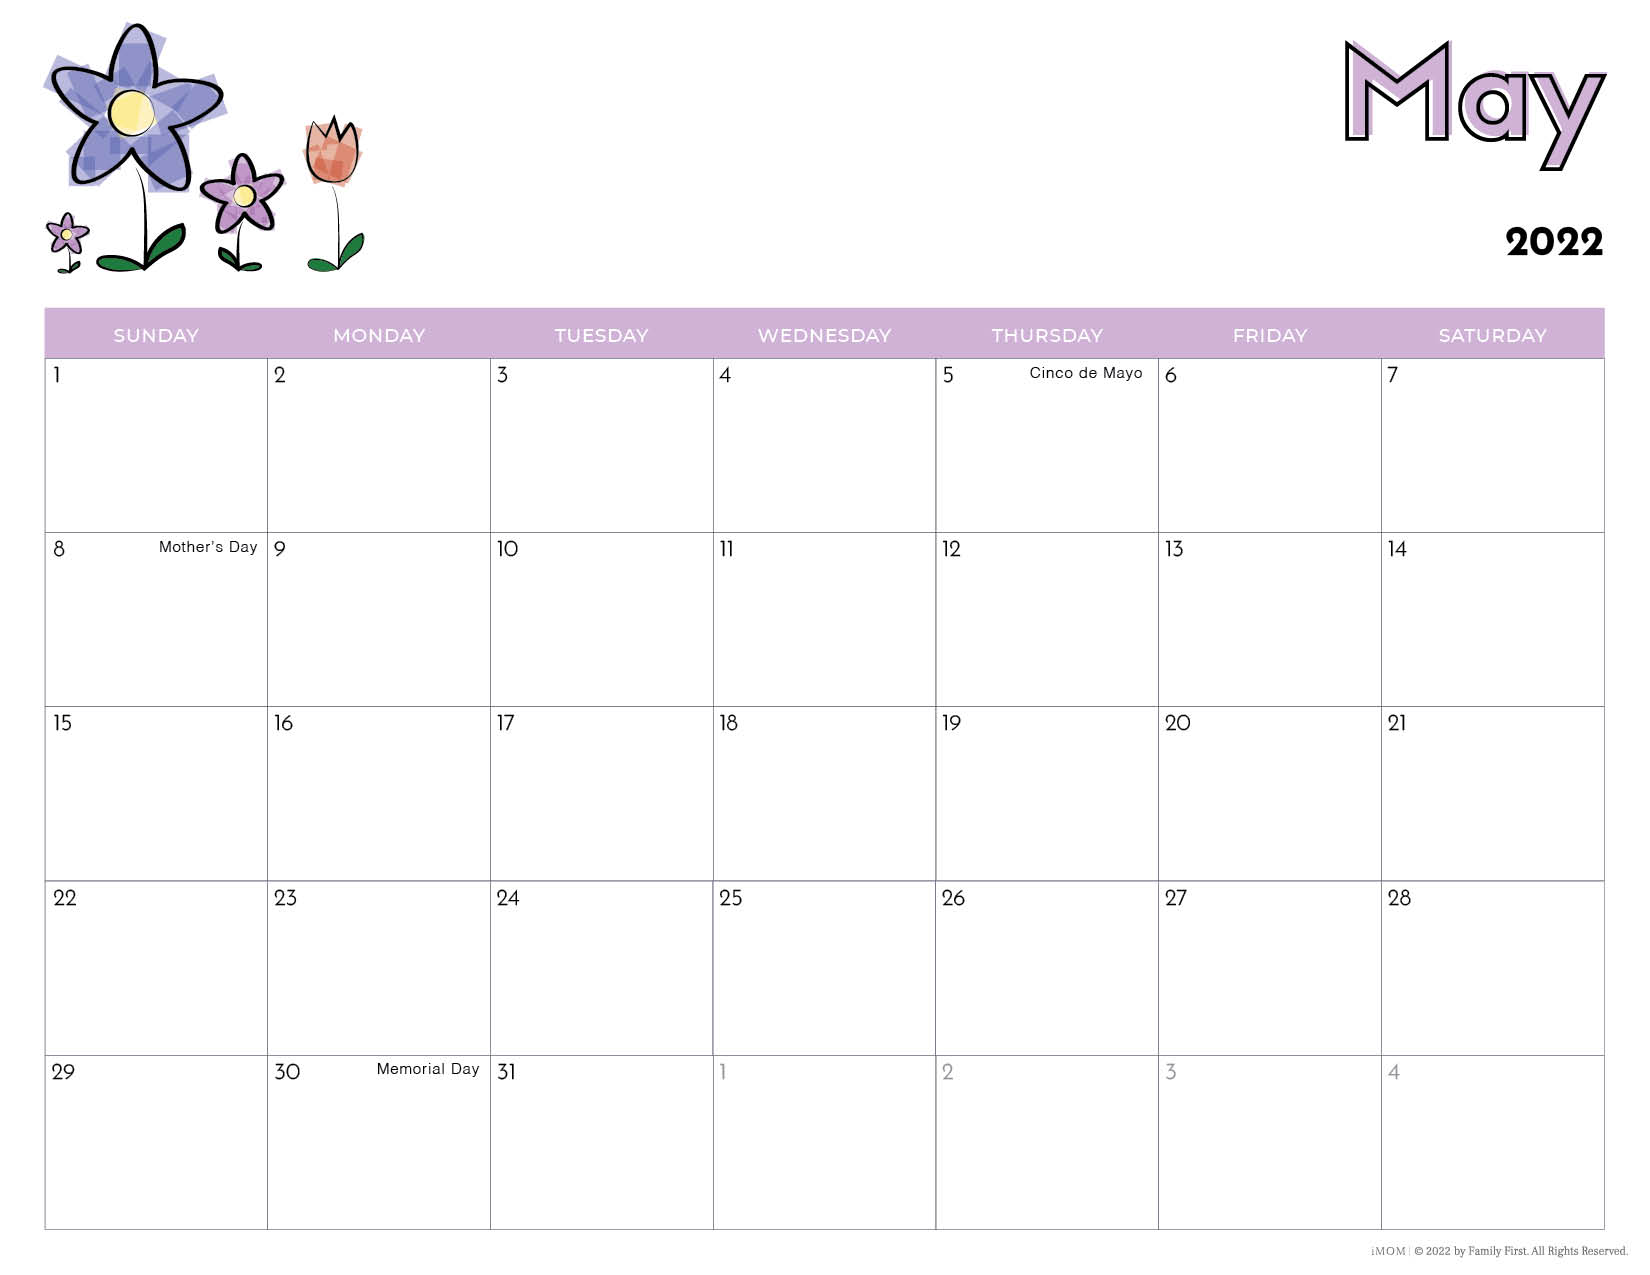 2021 and 2022 Printable Calendars for Kids iMOM